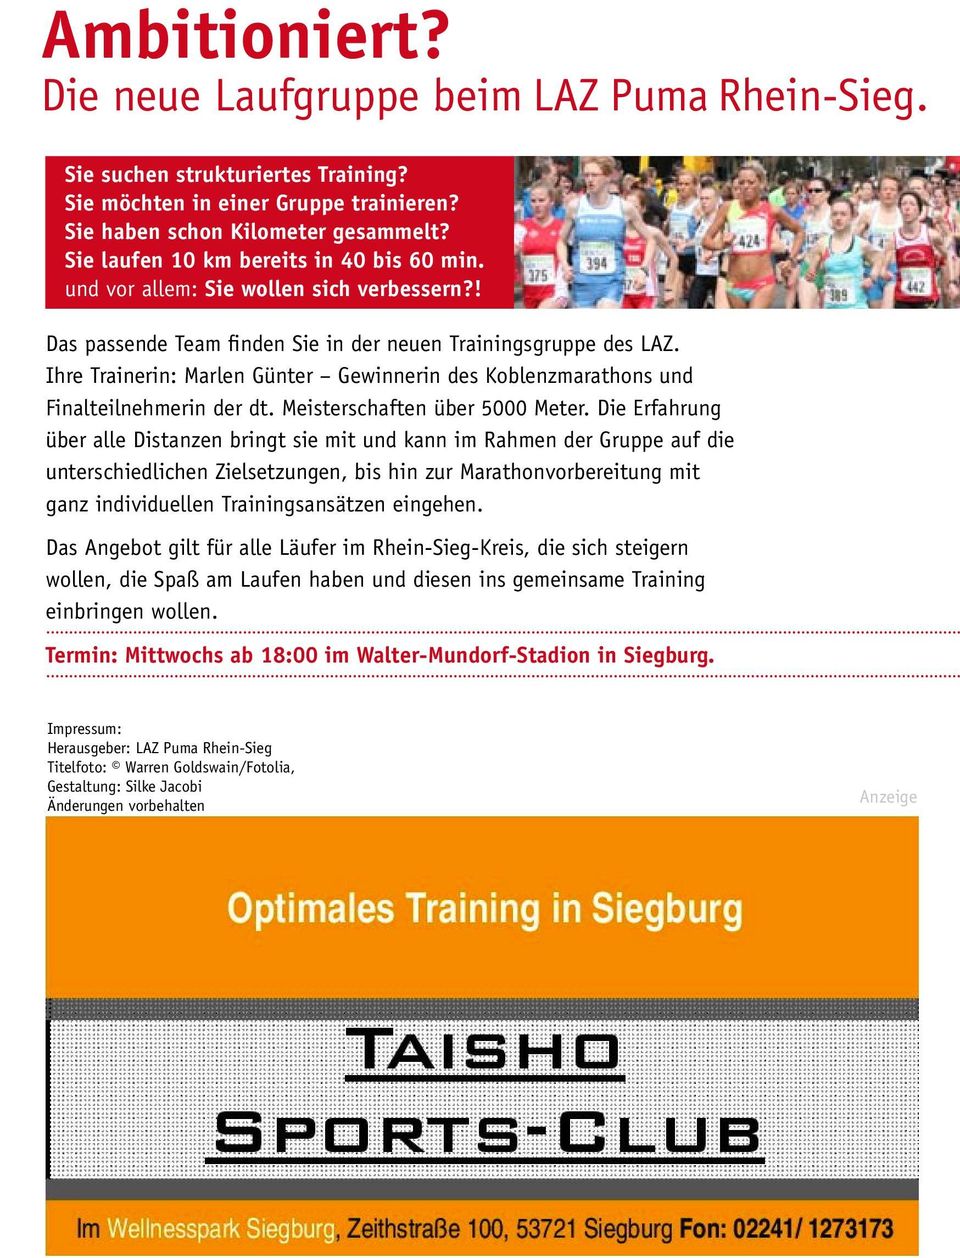 Ihre Trainerin: Marlen Günter Gewinnerin des Koblenzmarathons und Finalteilnehmerin der dt. Meisterschaften über 5000 Meter.